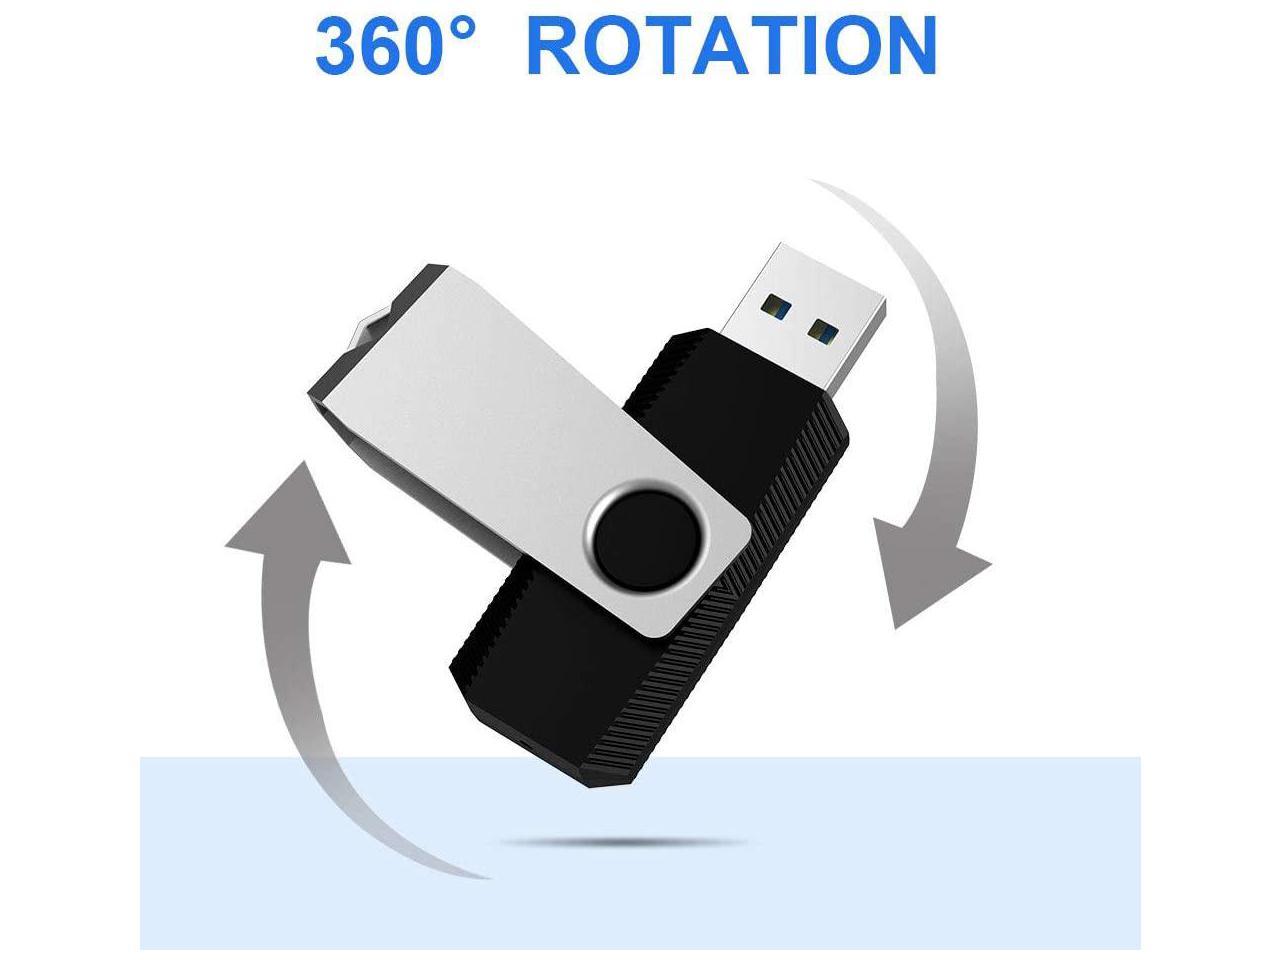 64GB USB Flash Drive Memory Stick K&ZZ Thumb Drive Gigstick USB3.0 Pen Drive for Folding Digital Data Storage Zip Drive Jump Drive